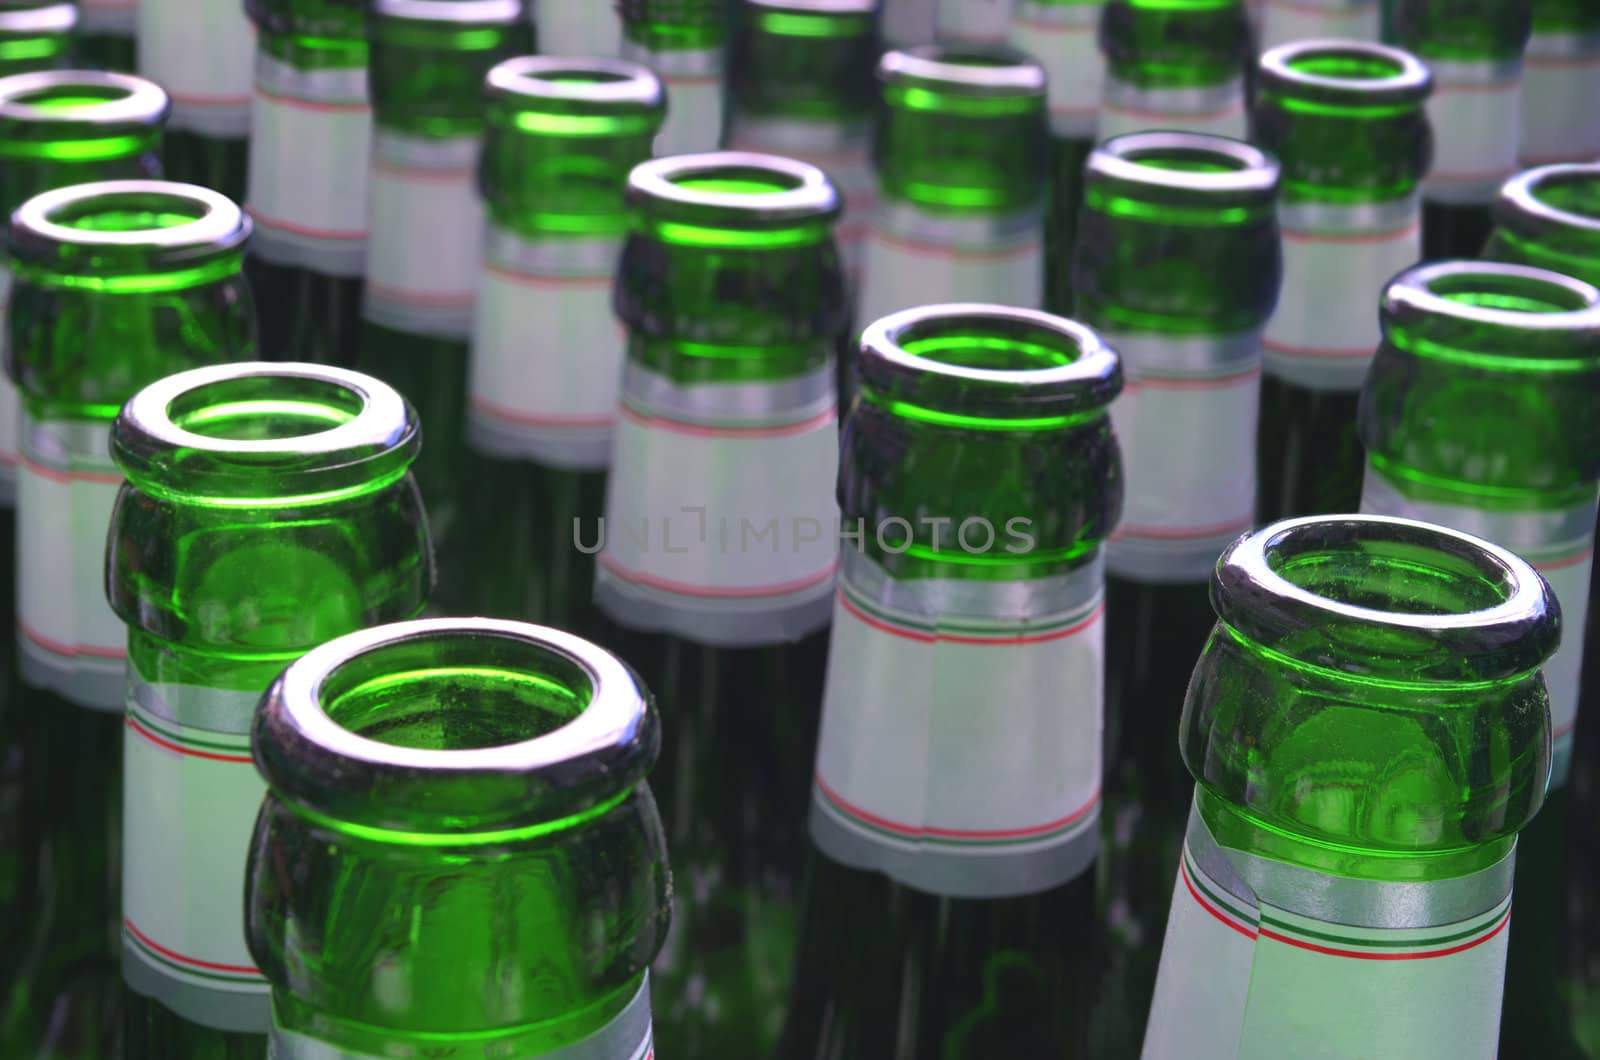 An array of green beer bottles.